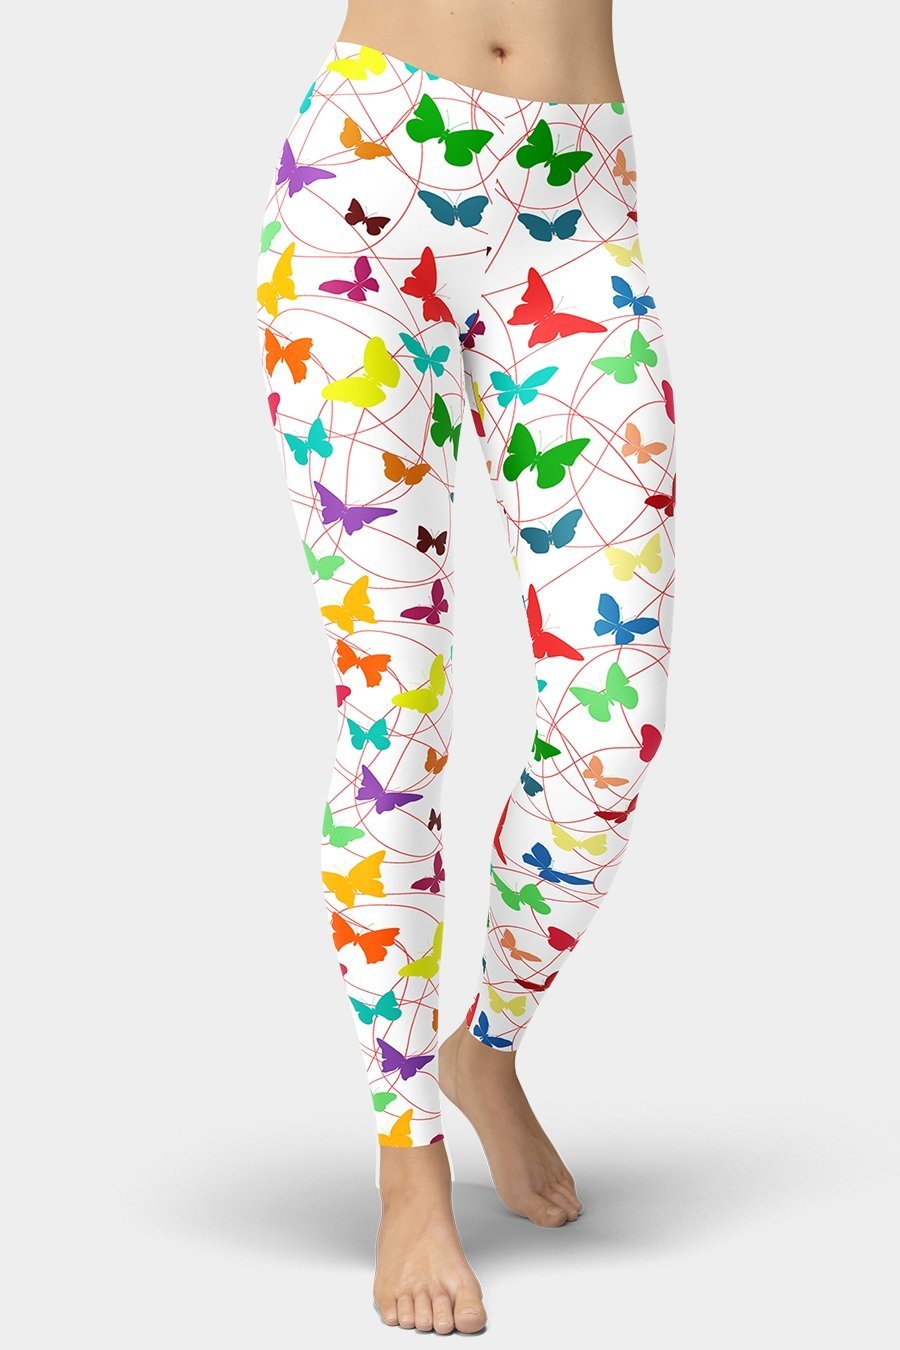 Colorful Butterfly Leggings - SeeMyLeggings